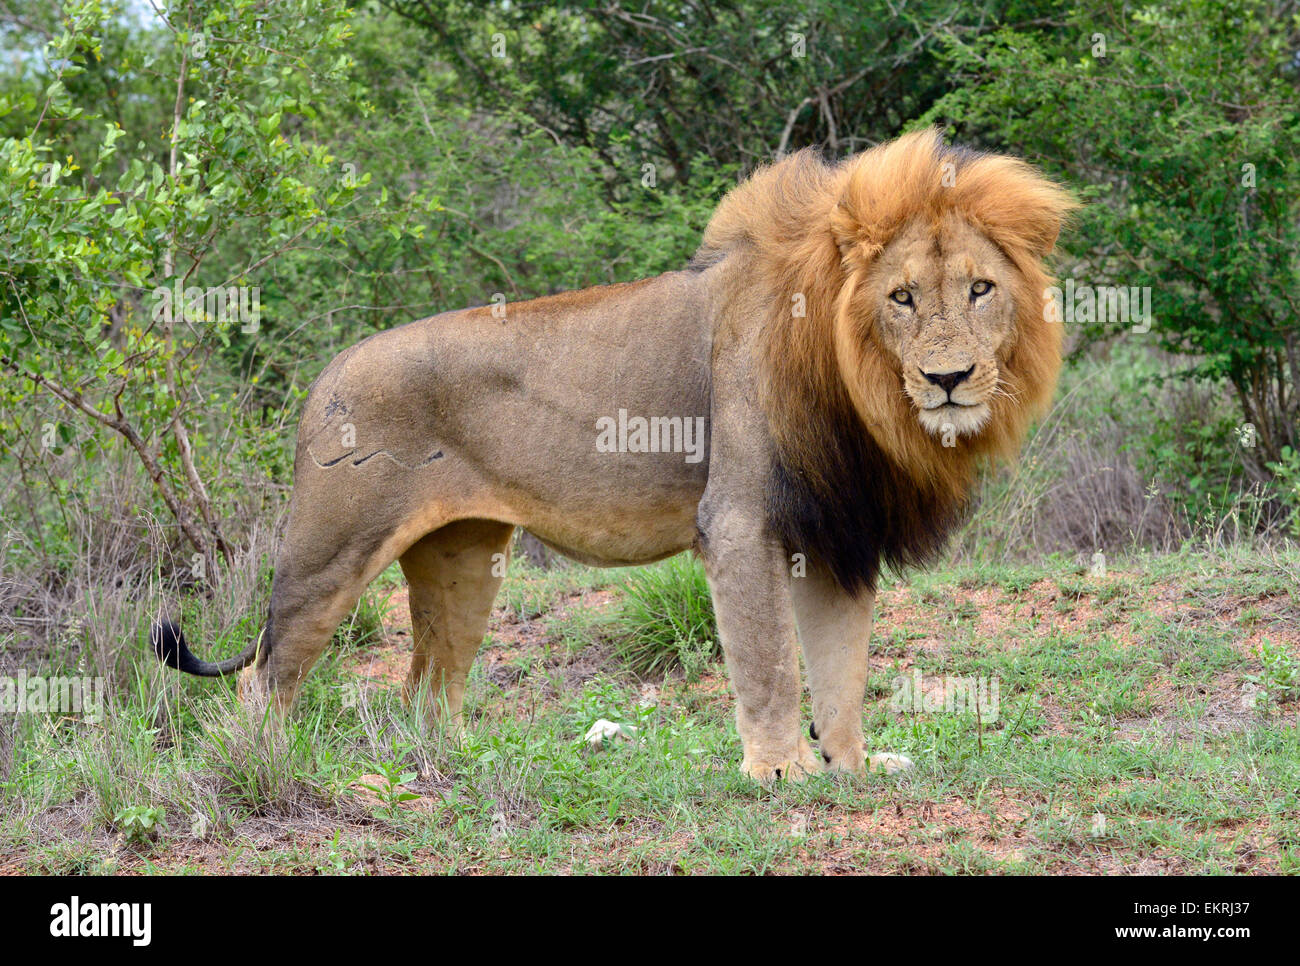 Peludo aguarï león macho mirando celosamente al hermano de acoplamiento en el mundialmente famoso Parque Nacional Kruger, en Mpumalanga, Sudáfrica. Foto de stock